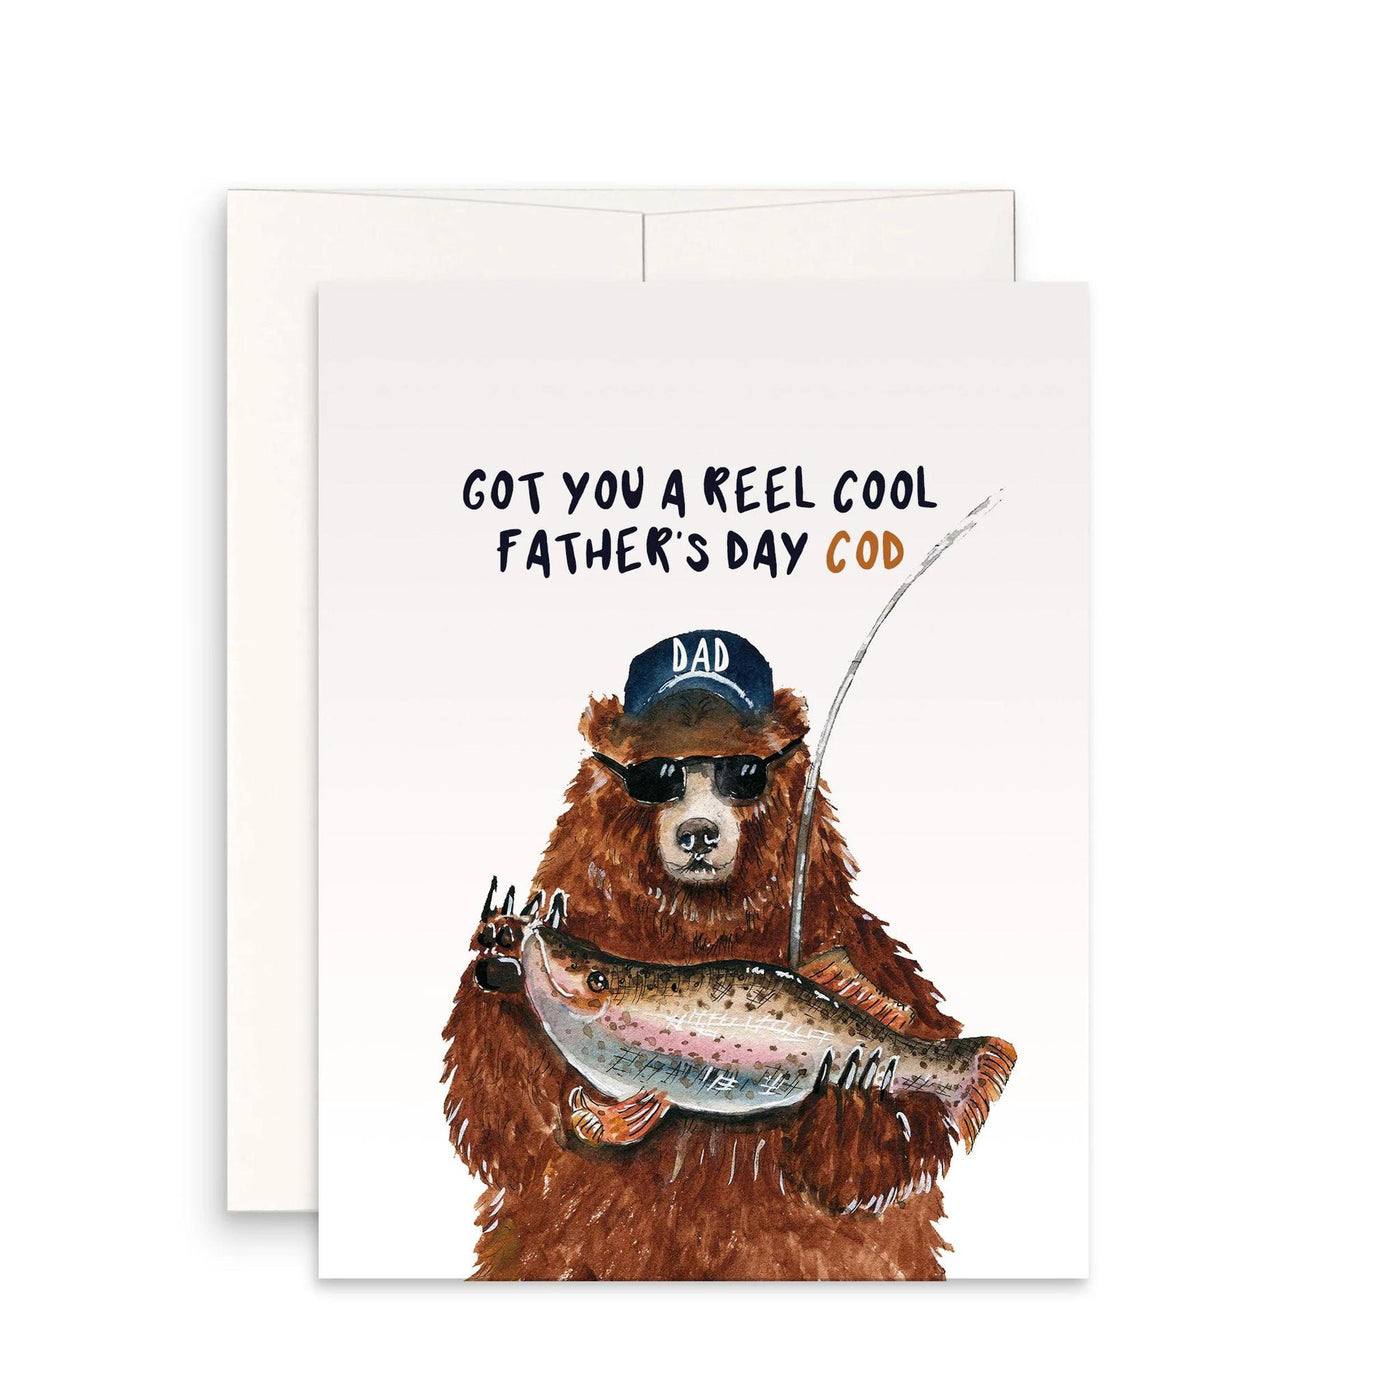 Bear Father's Day Cod Card